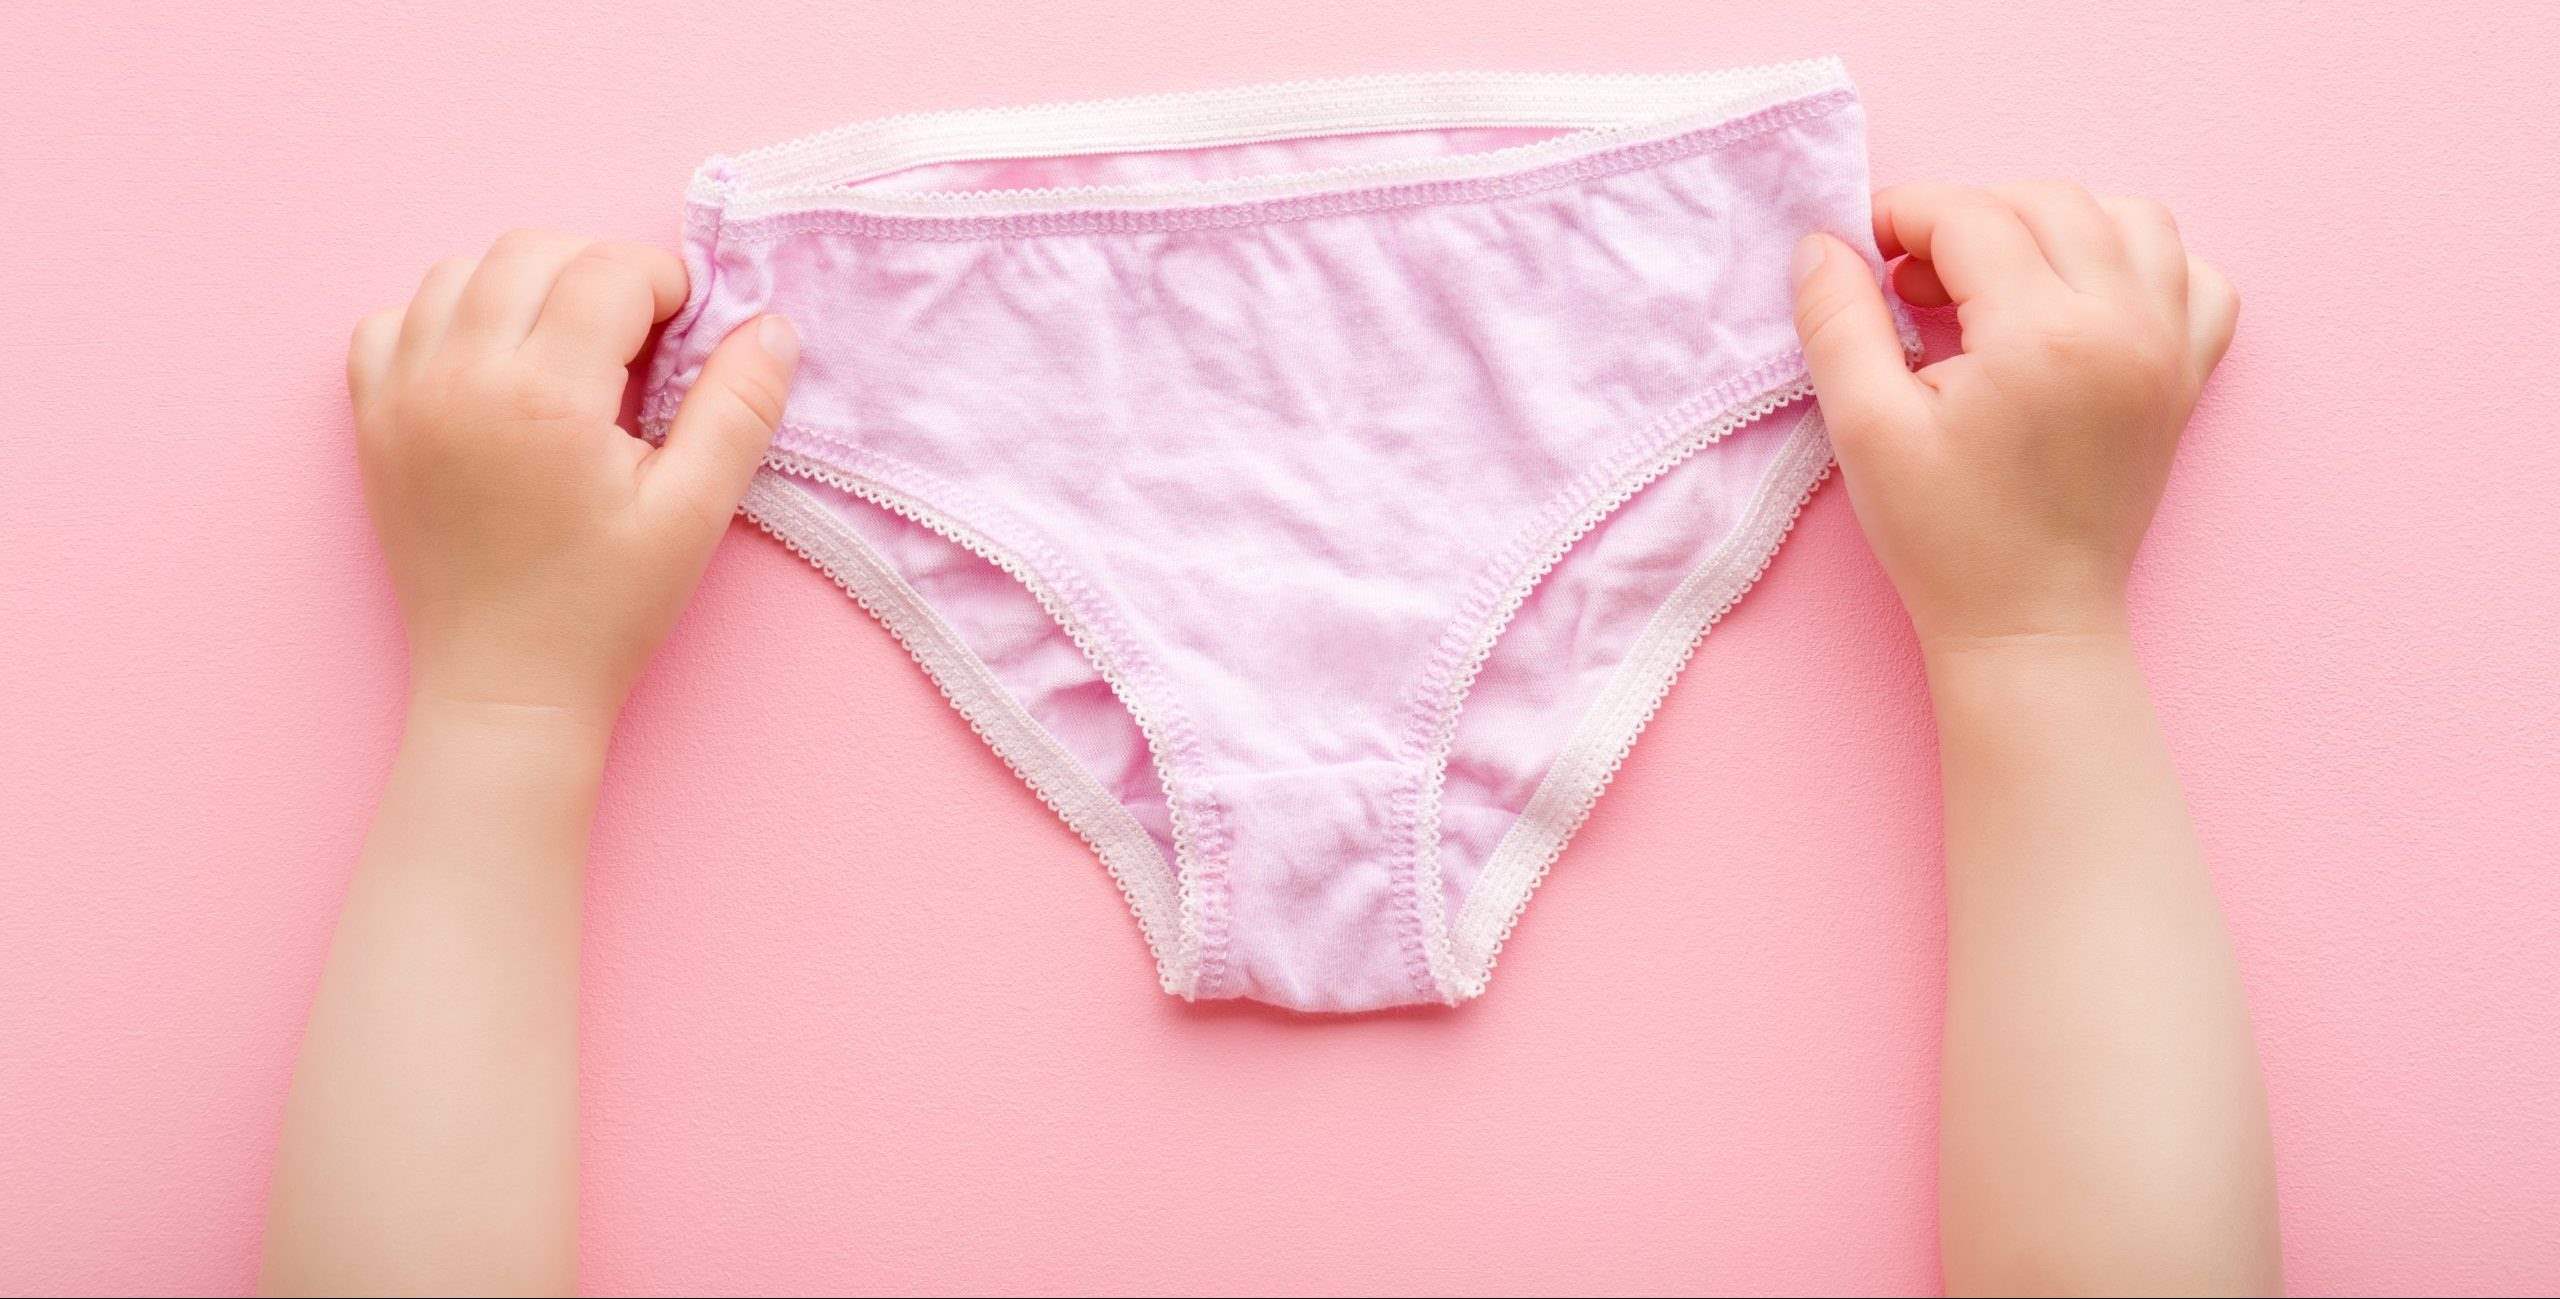 How To Shrink Cotton Underwear